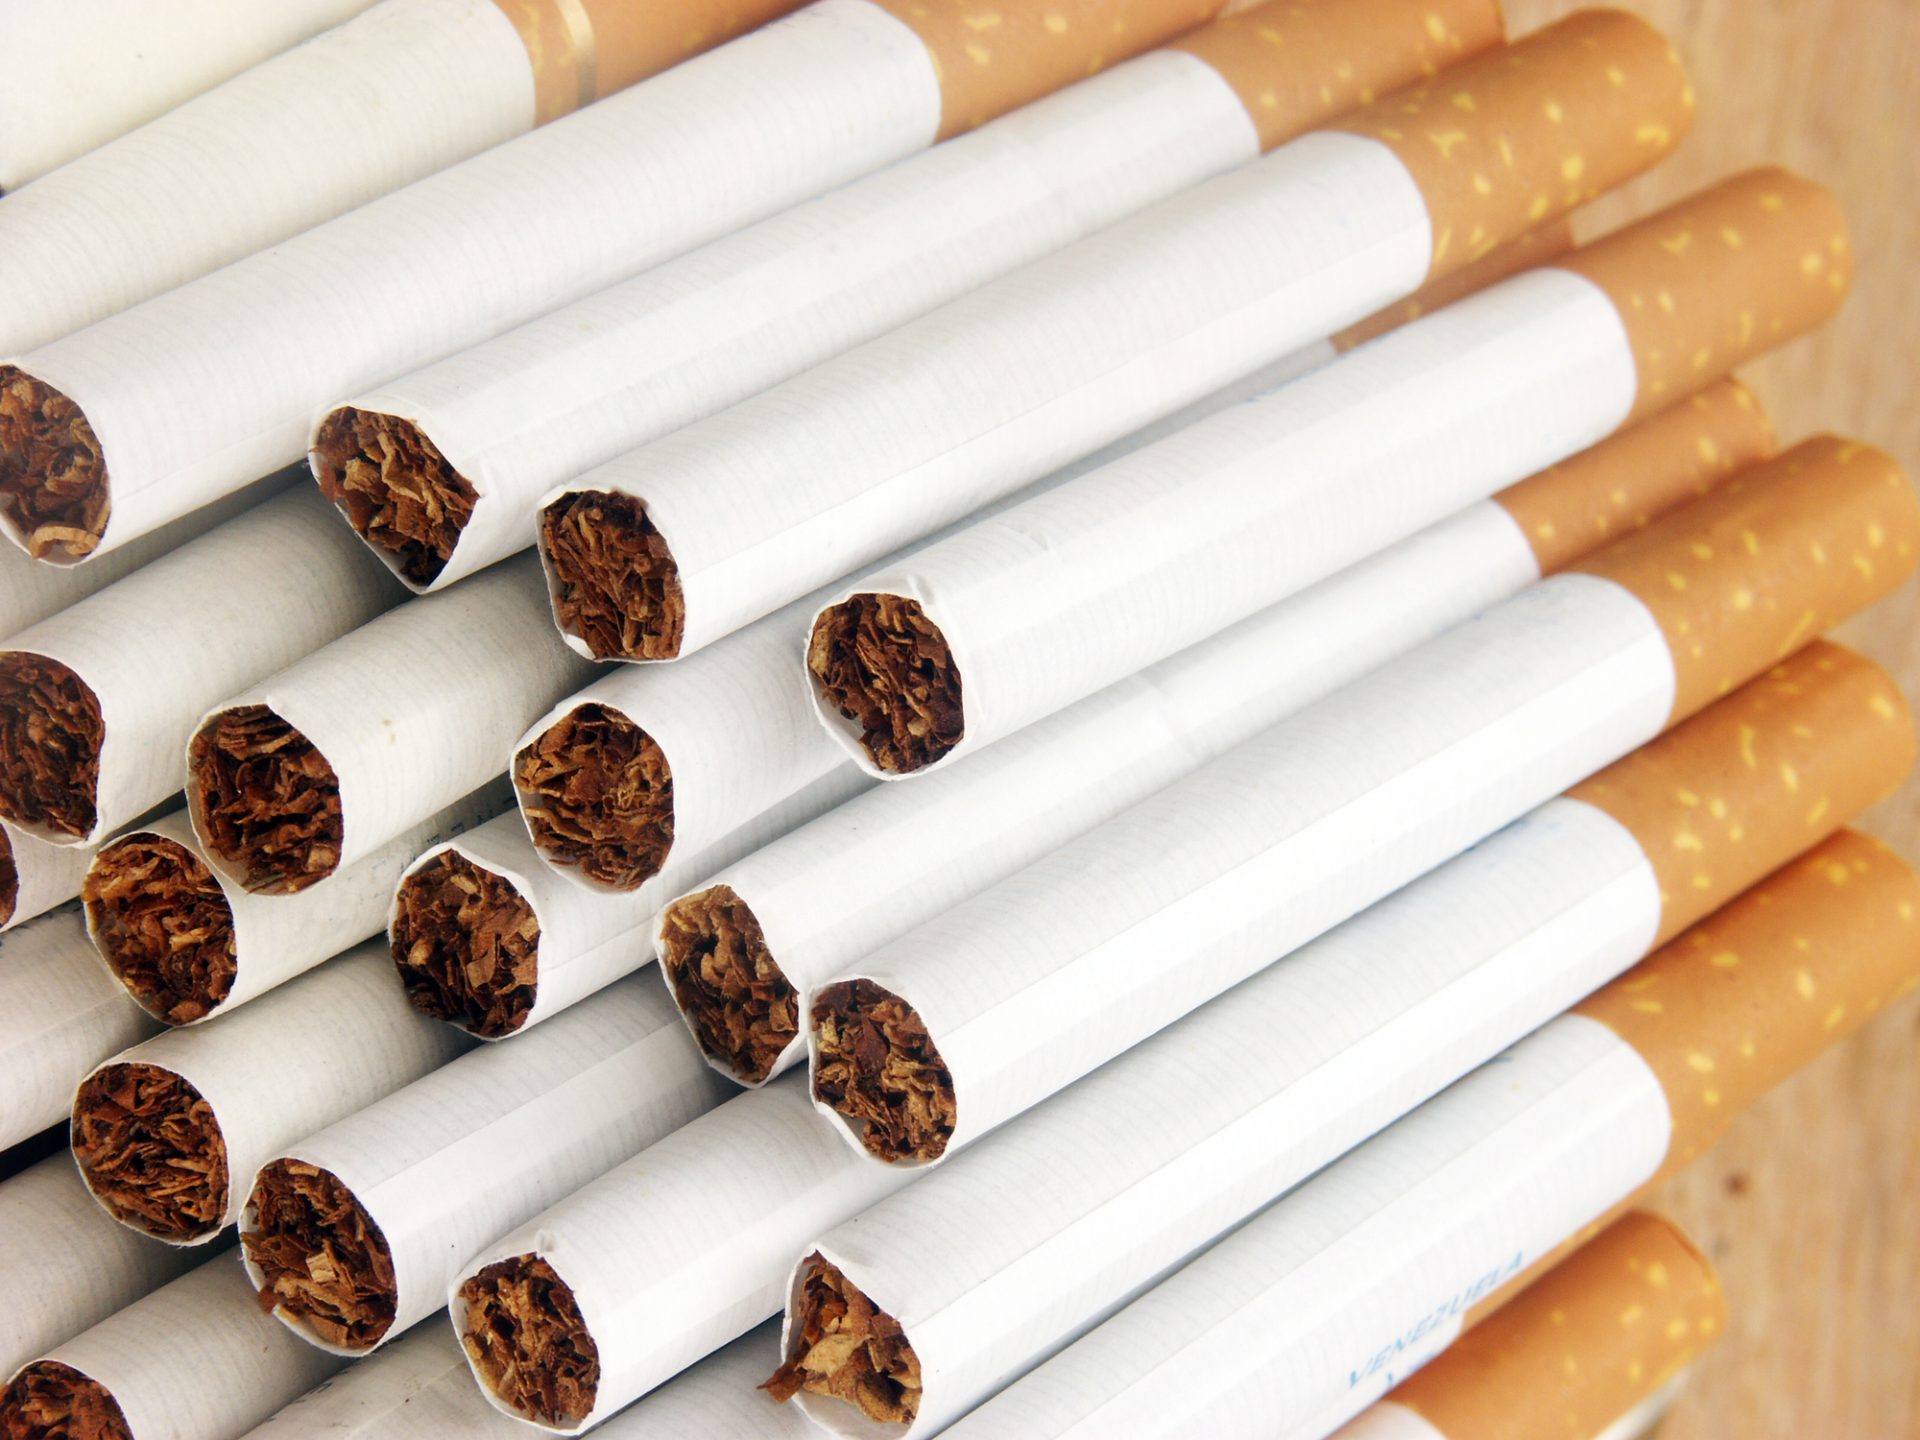 GNR apreende cerca de sete milhões de cigarros &#8220;em situação irregular&#8221;